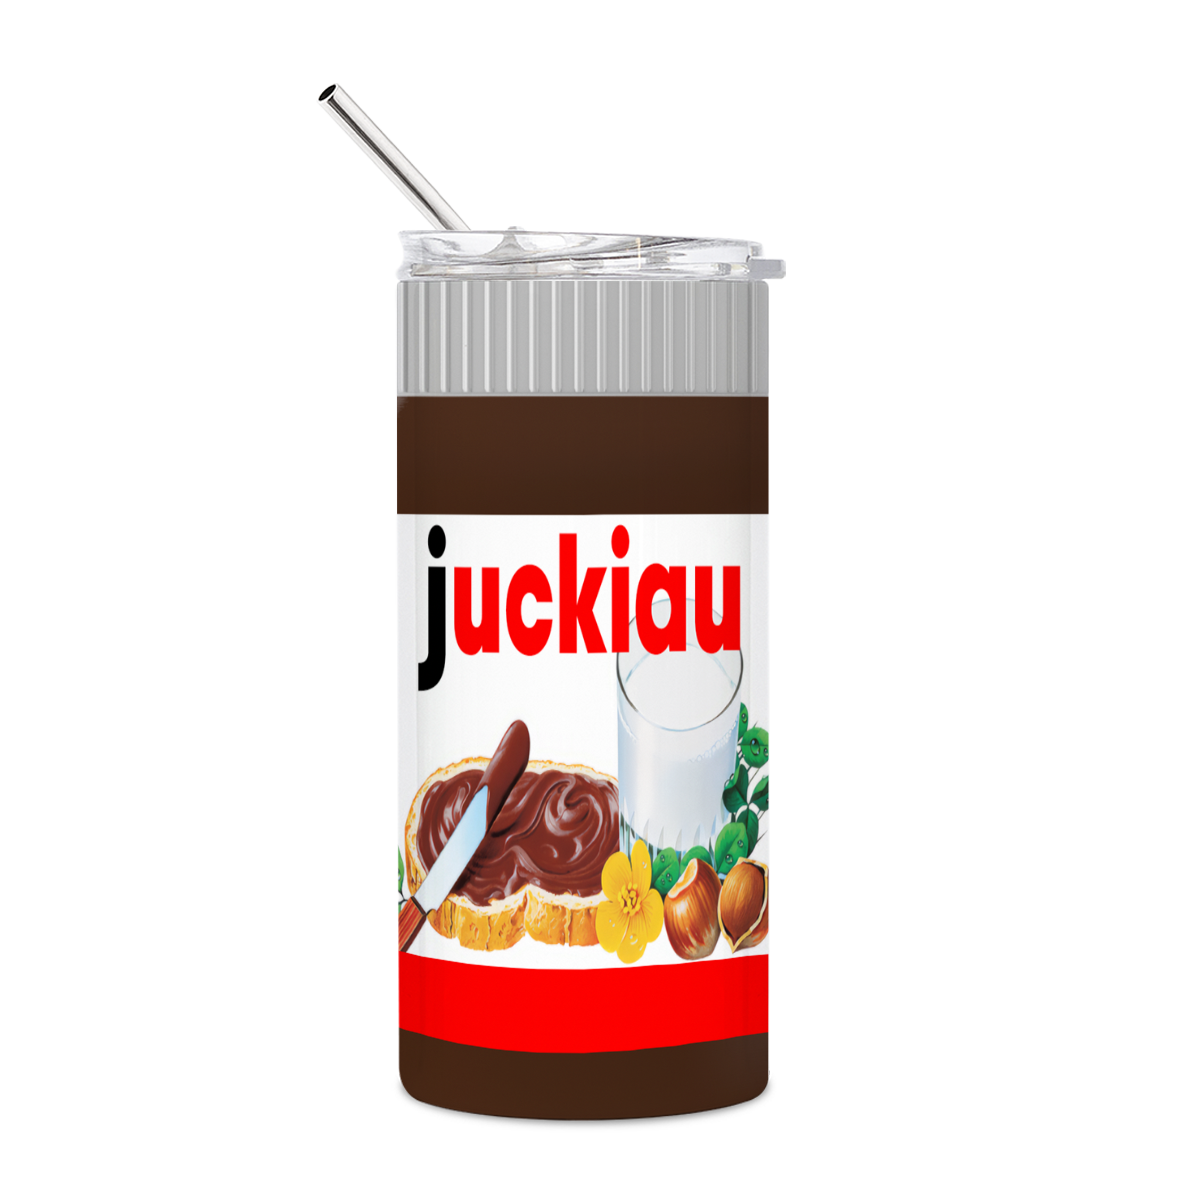 Juckiau